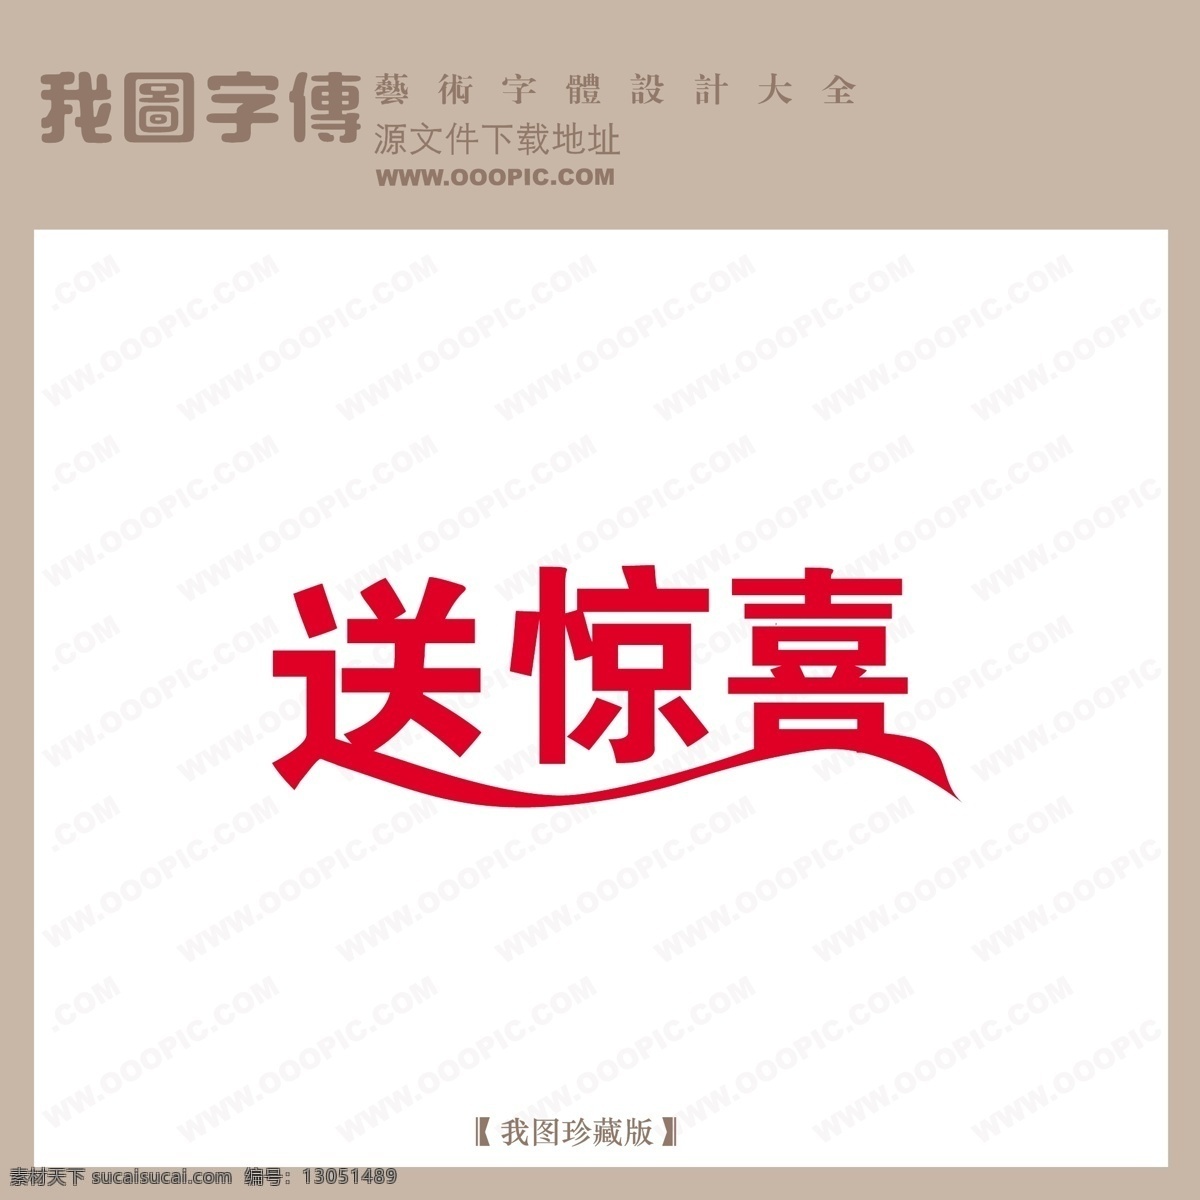 送 惊喜 商场 艺术 字 中文 现代艺术 中国 字体 创意艺术字 商场艺术字 中国字体设计 送惊喜 矢量图